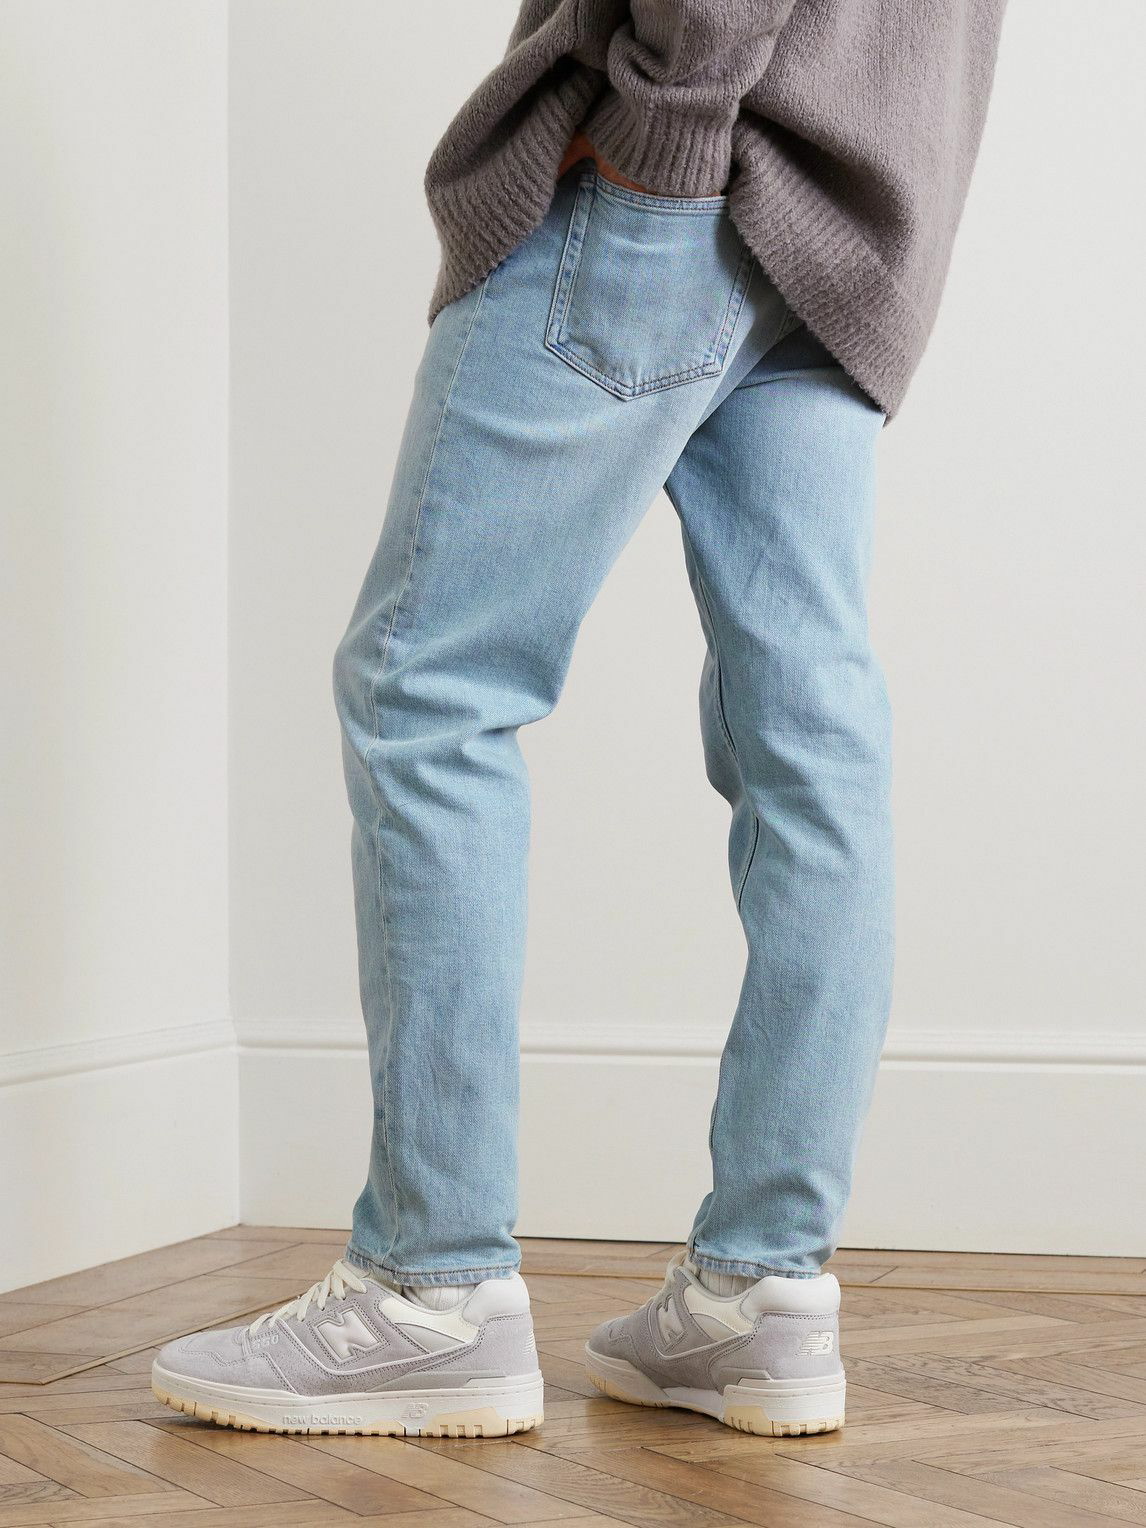 【質店】acne studios - river jeans パンツ